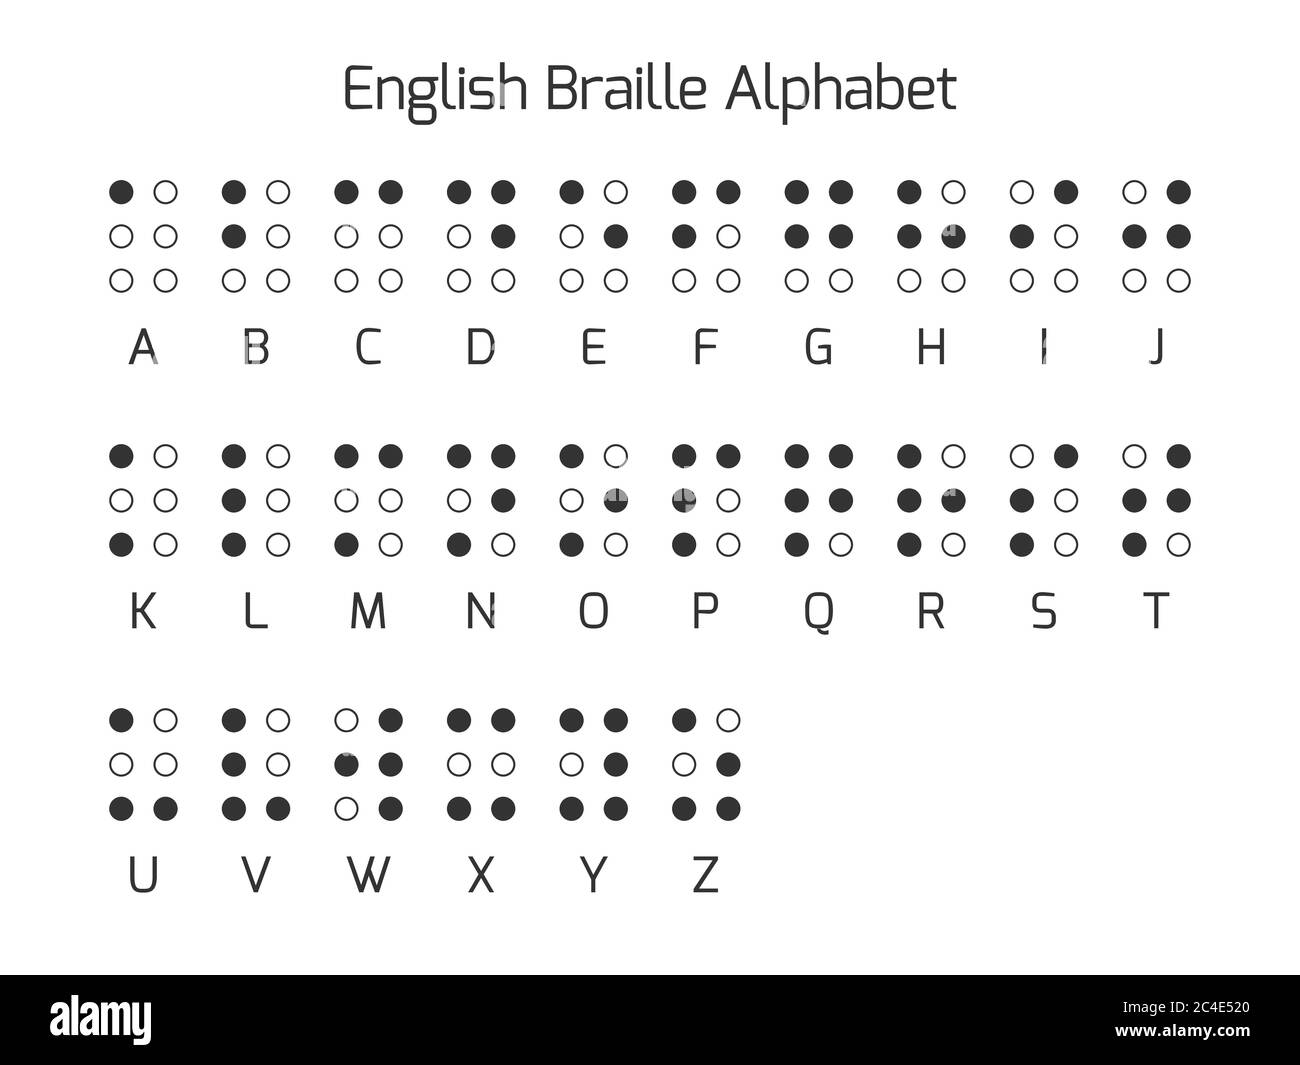 Englische Buchstaben in Braille-Schrift. Braille ist ein taktiles